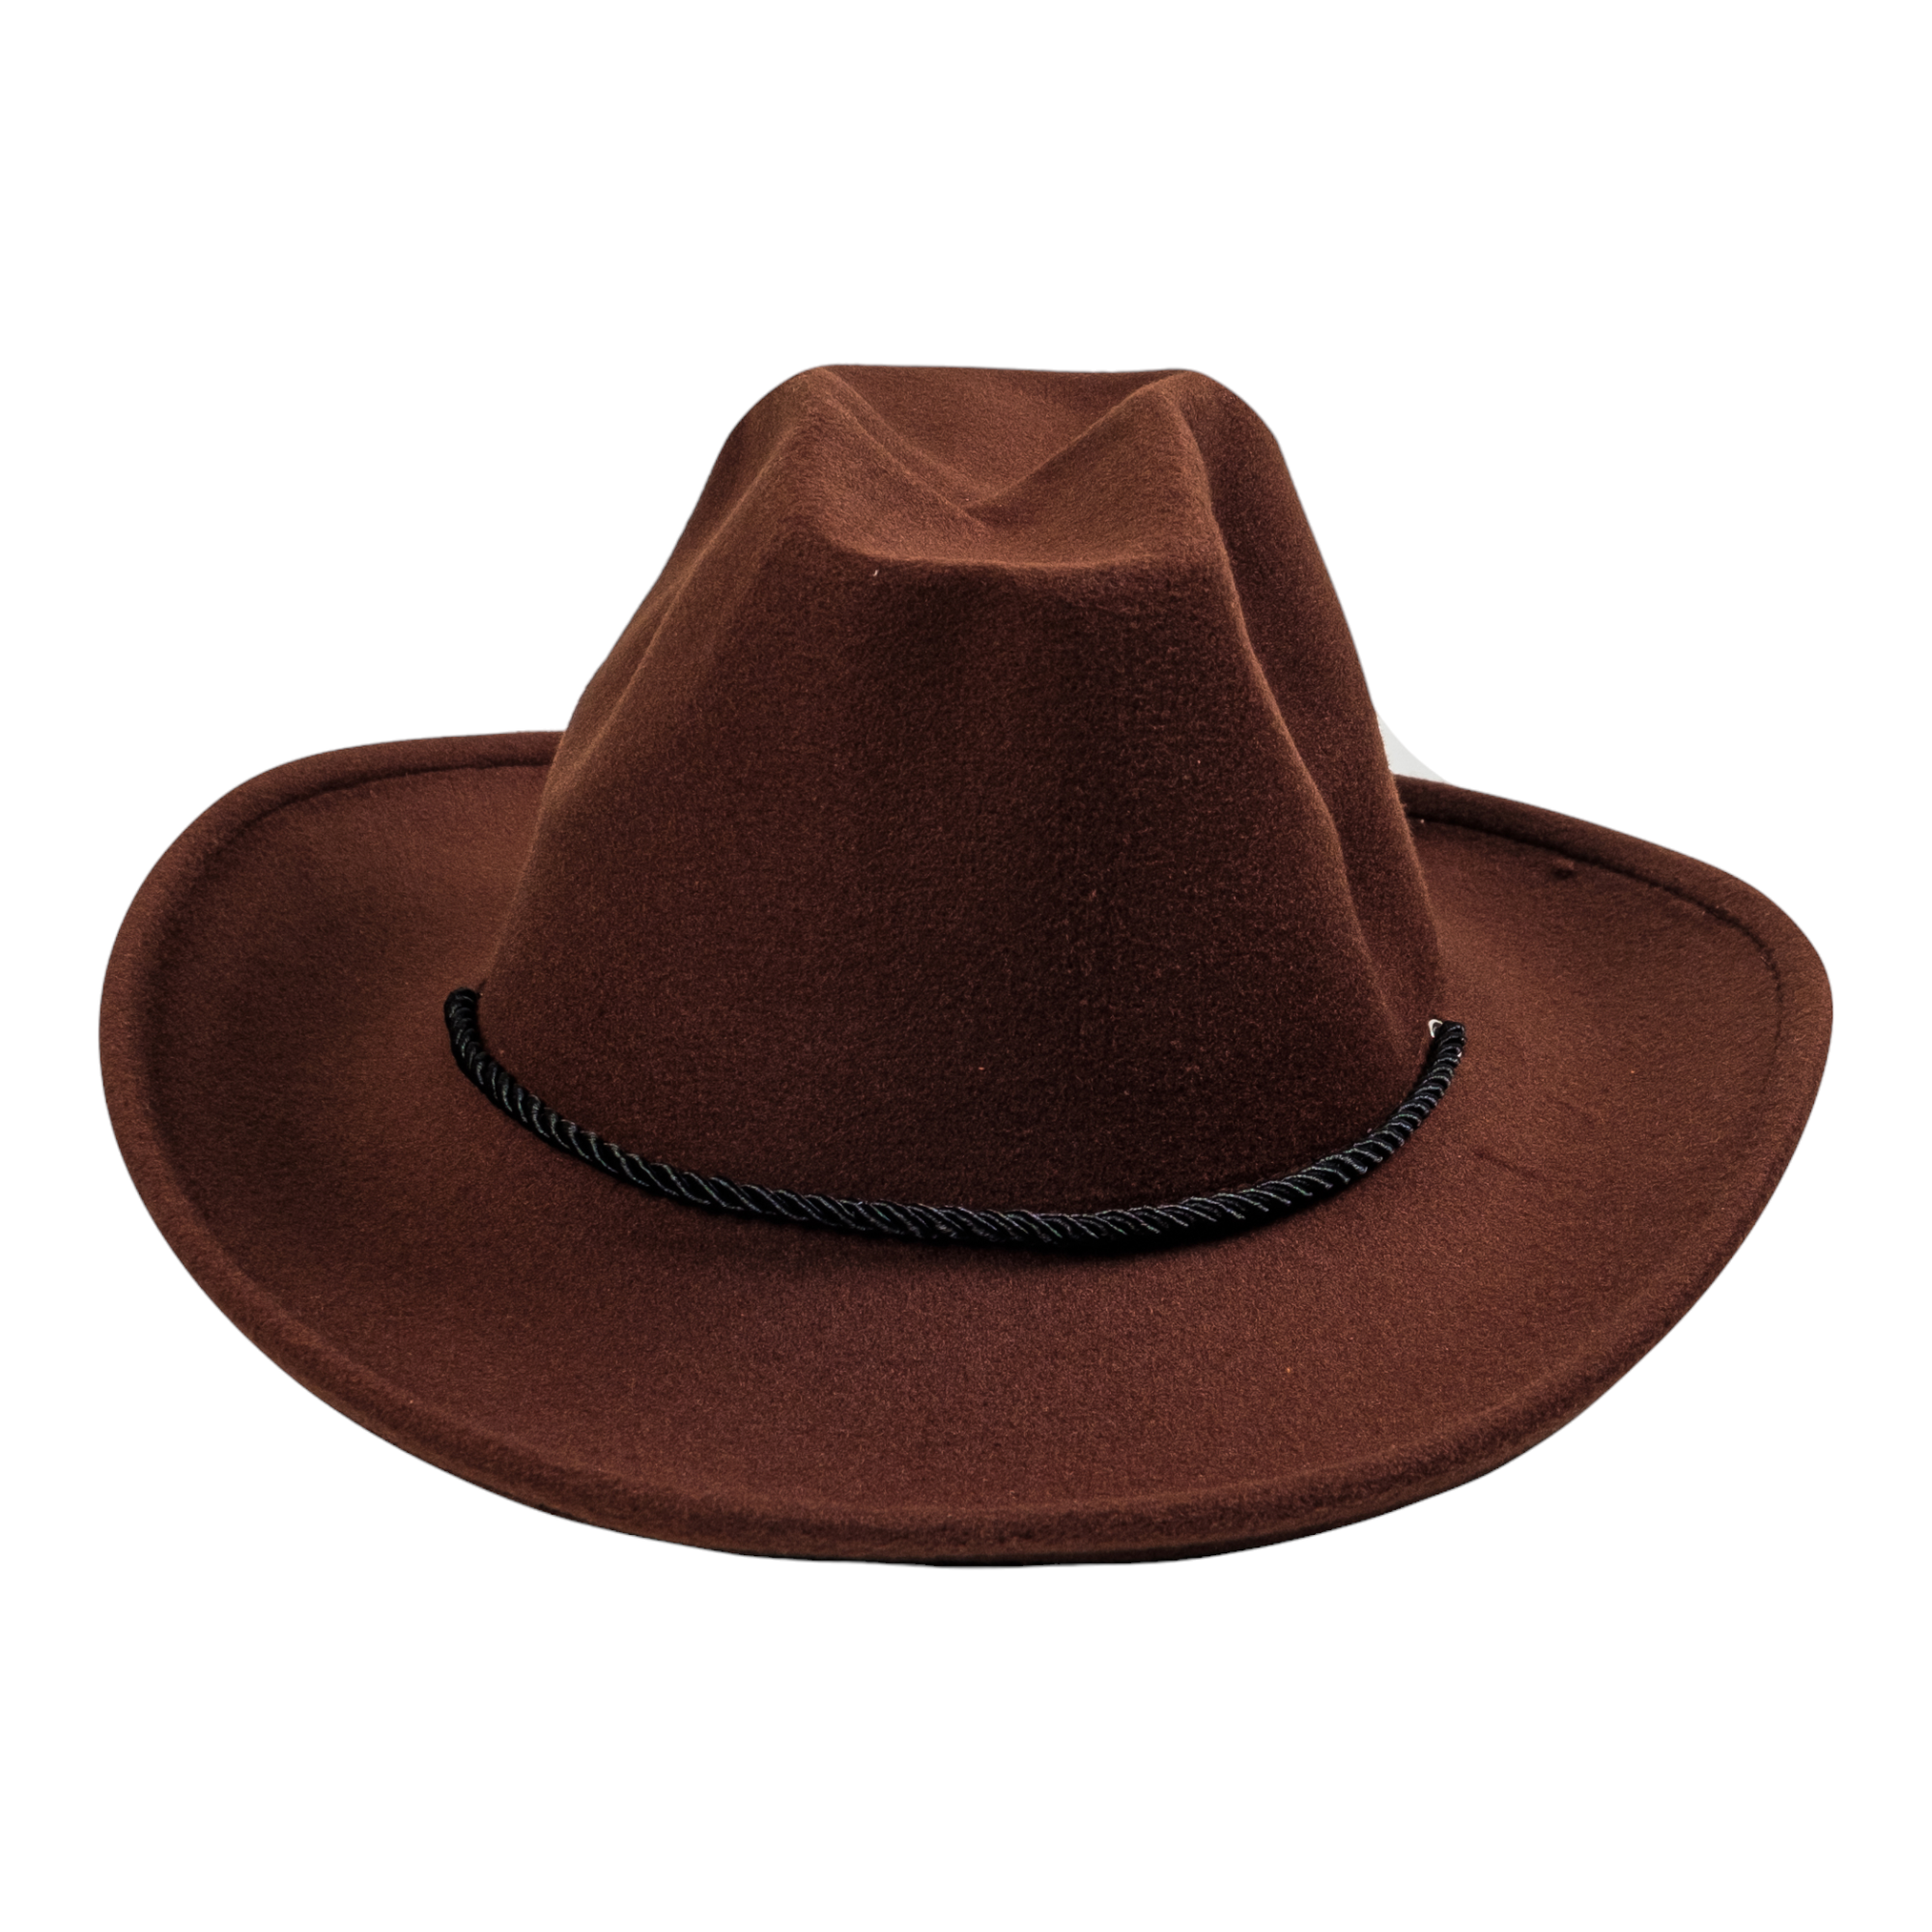 Chokore Vintage Cowboy Hat (Chocolate Brown)